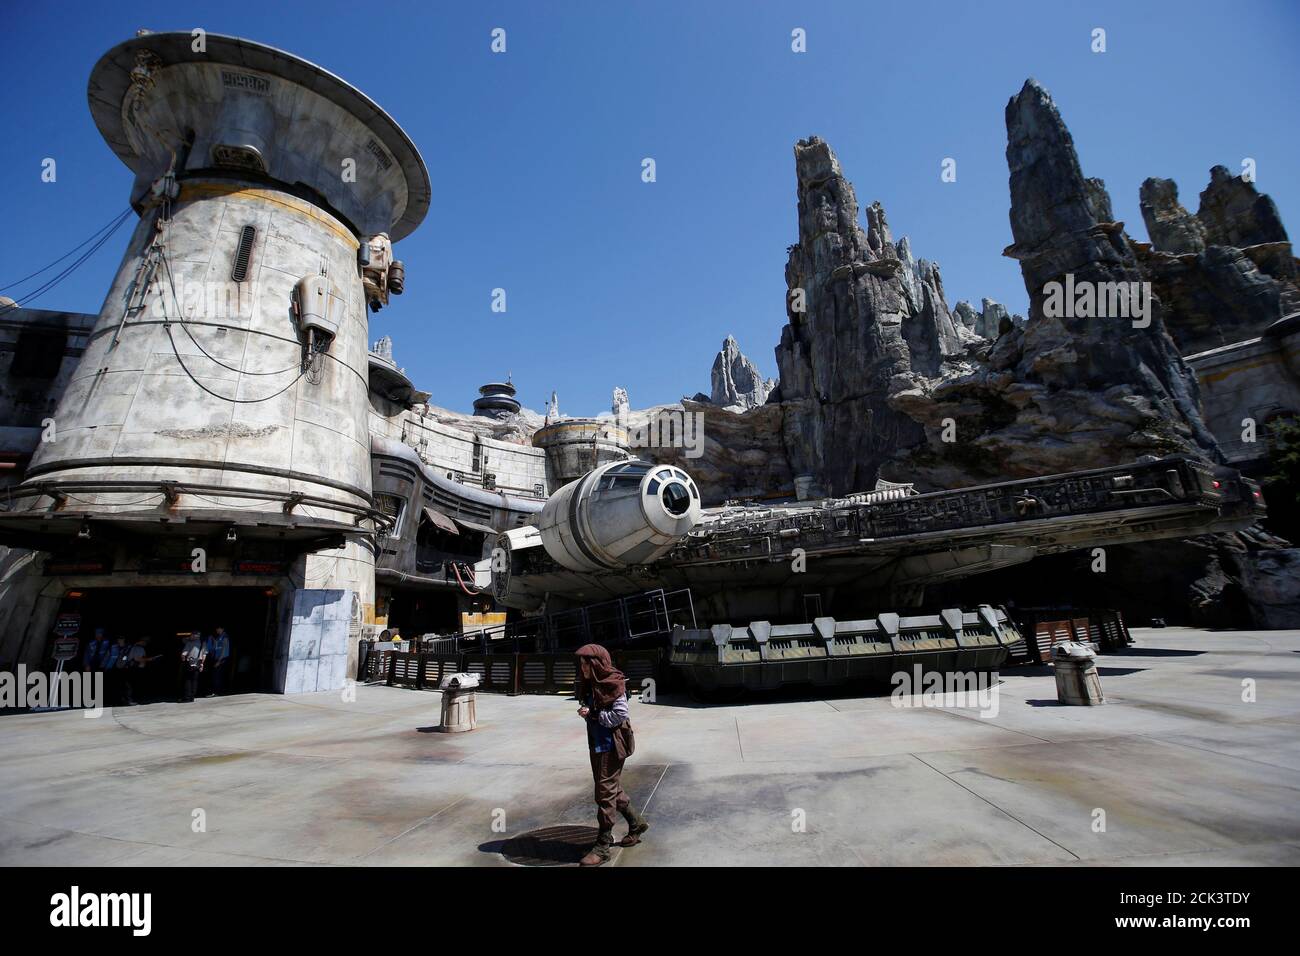 Được xây dựng từ chi tiết tinh xảo đến từng cạnh, chiếc Millennium Falcon phản ánh đầy đủ tinh thần của loạt phim Star Wars. Hãy đón xem ảnh của chiếc tàu vũ trụ này để khám phá thêm các chi tiết đầy mê hoặc.